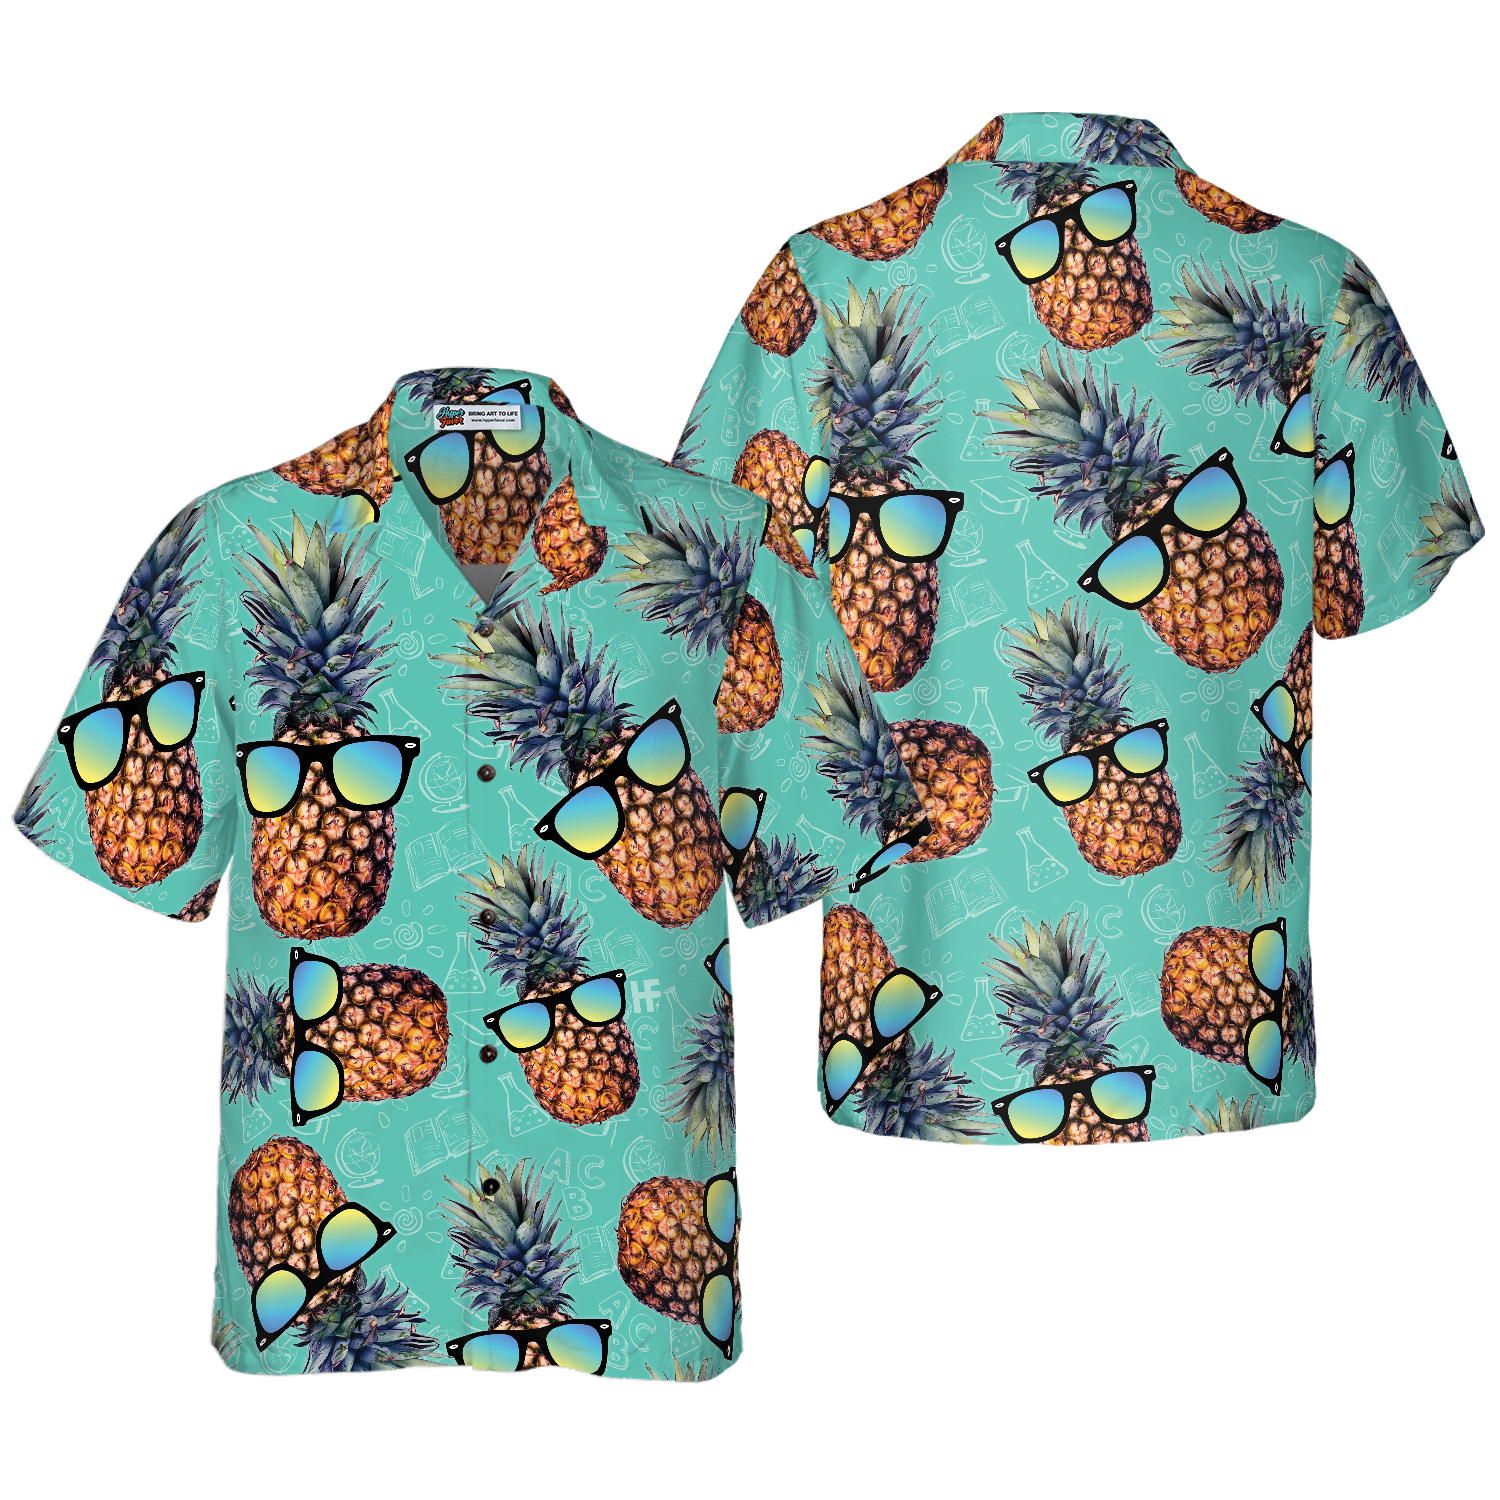 Chill Pineapple Teacher Hawaiian Shirt, Teacher Shirt for Men And Women, Best Gift For Teachers, Friend, Family